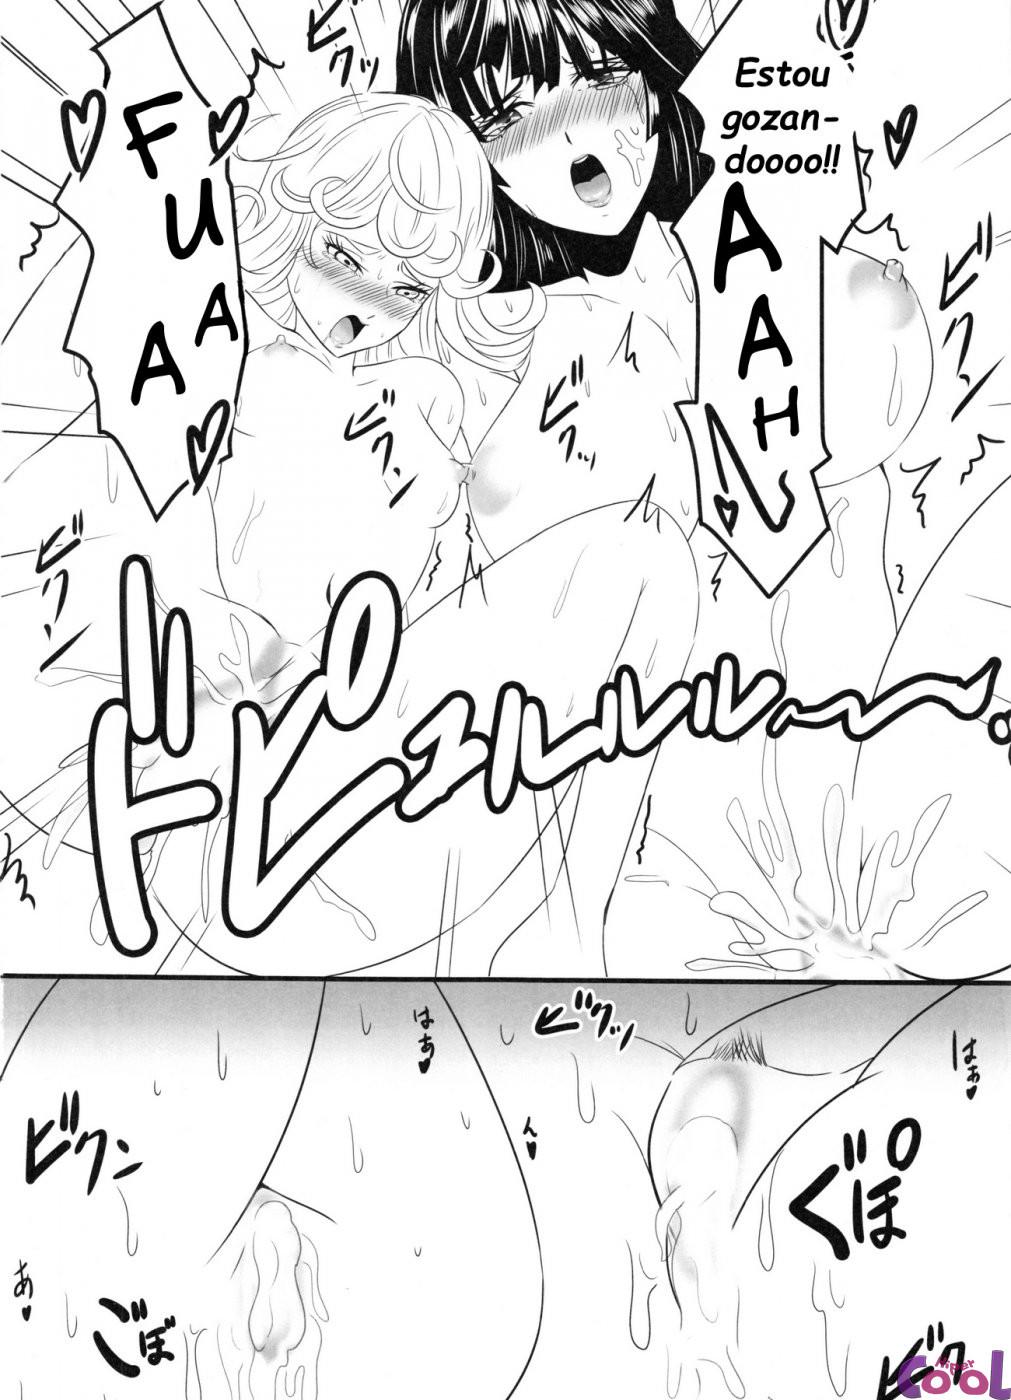 dekoboko-love-sister-2-gekime-chapter-01-page-17.jpg